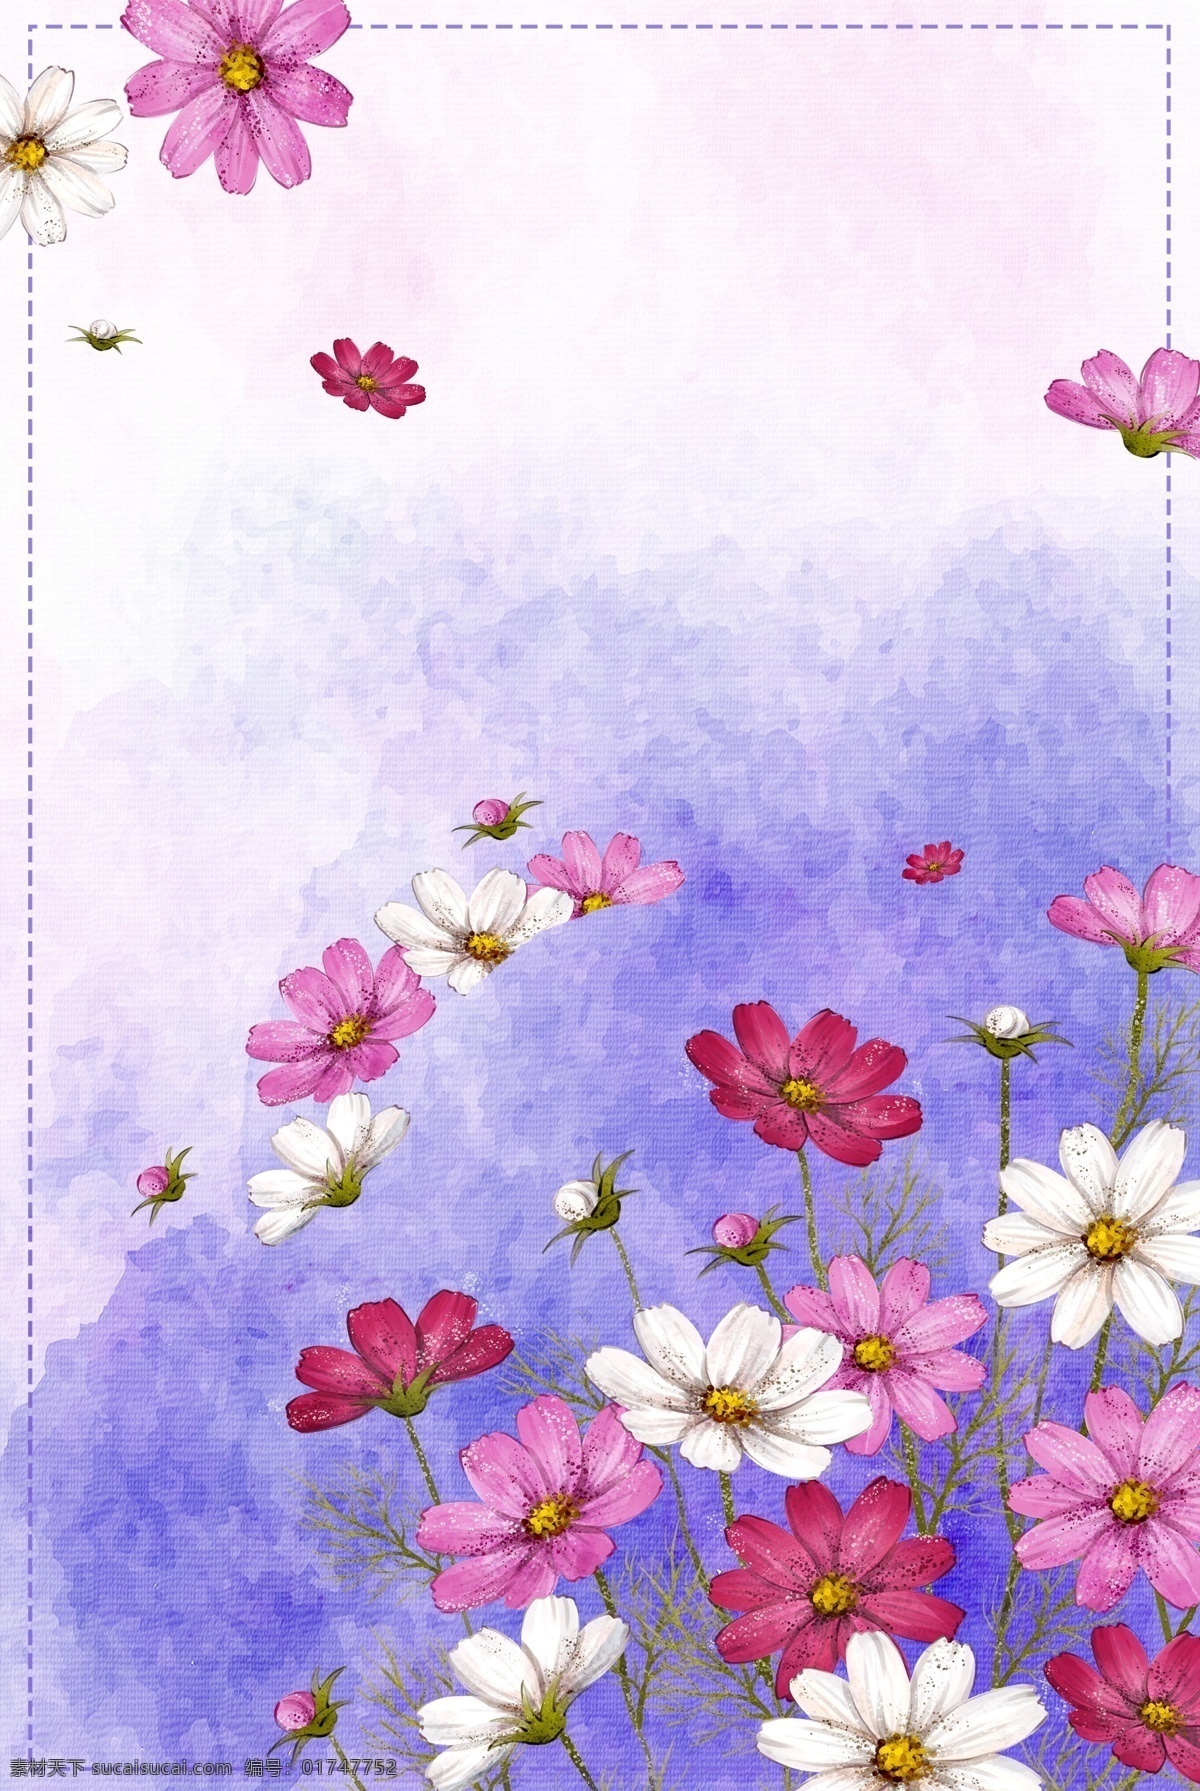 浪漫 水彩 手绘 植物 花朵 海报 背景 底纹 清新 时尚 春夏